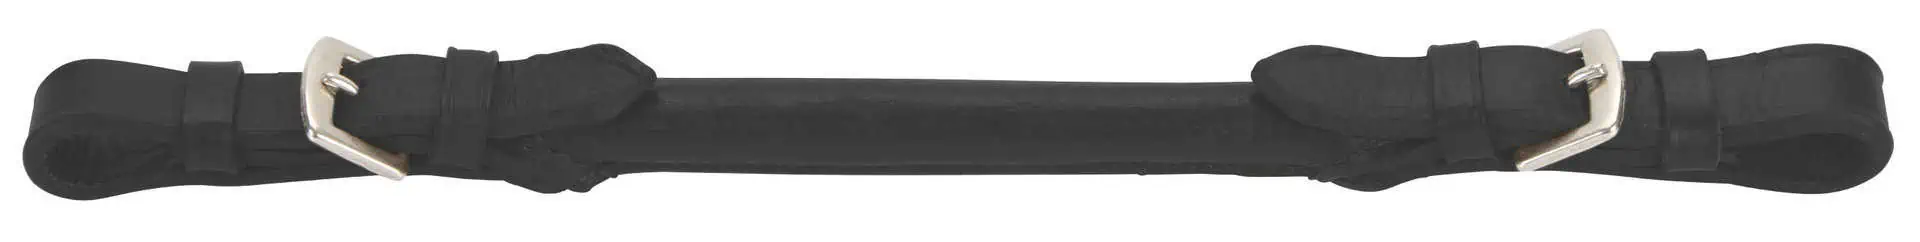 Stigbygel i svart läder 30 cm